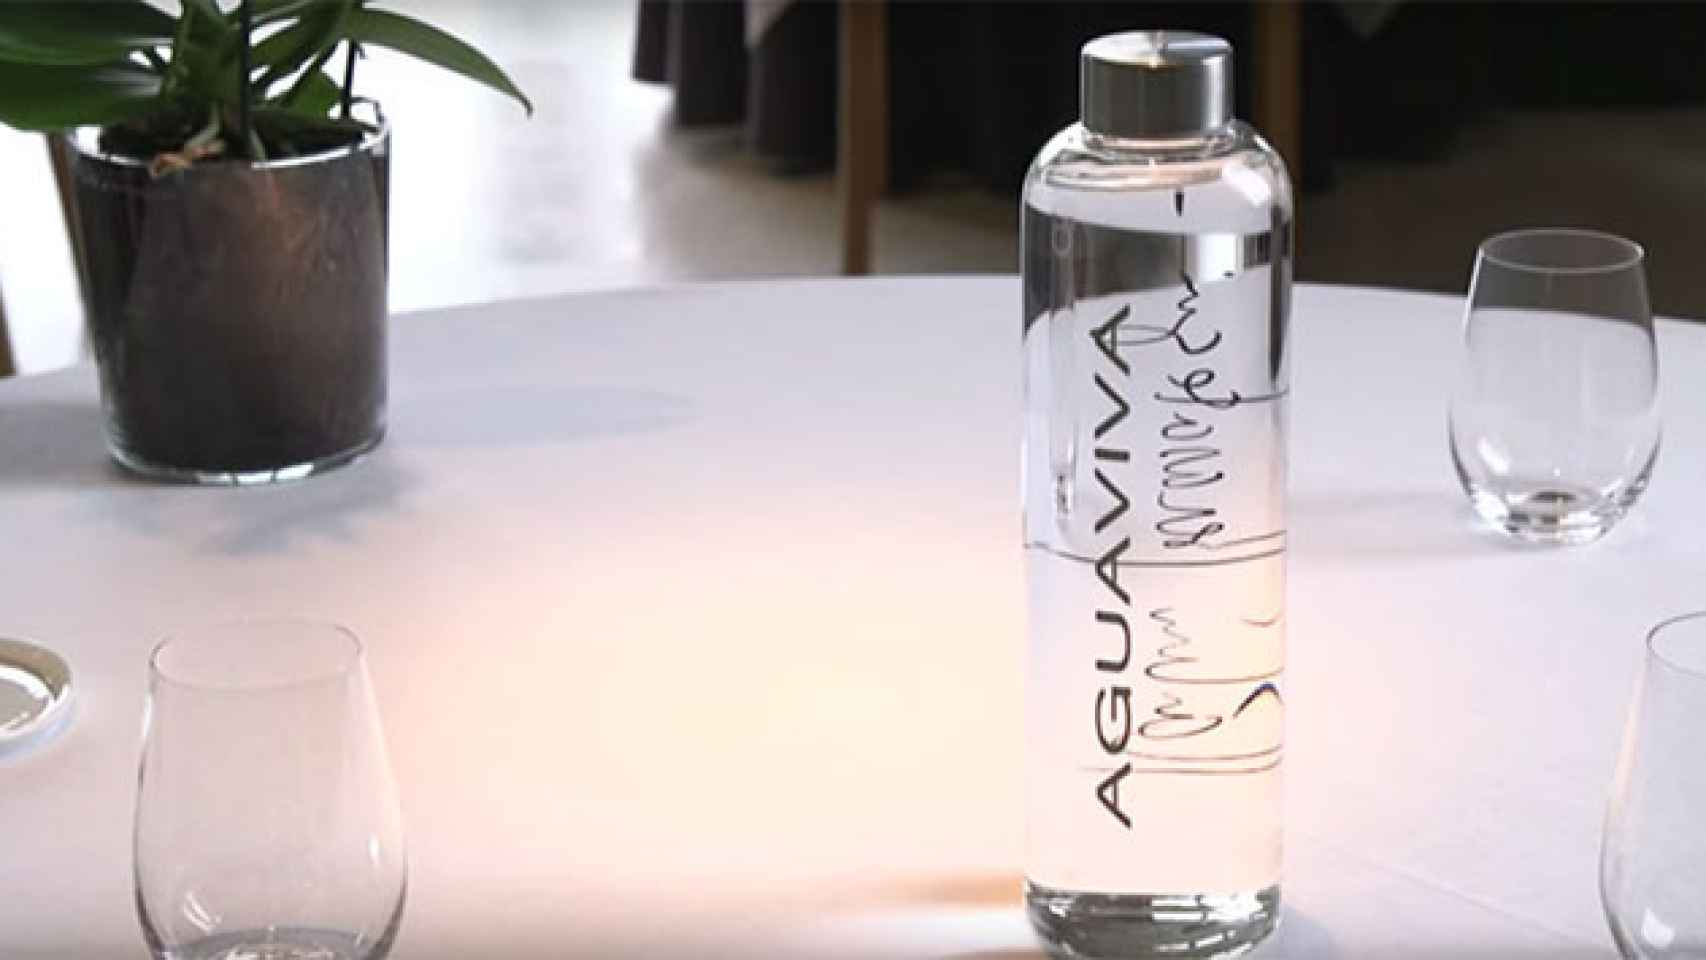 Una botella de agua del grifo filtrada del restaurante, con estrella Michelin, de Martín Berasategui / AGUAVIVA